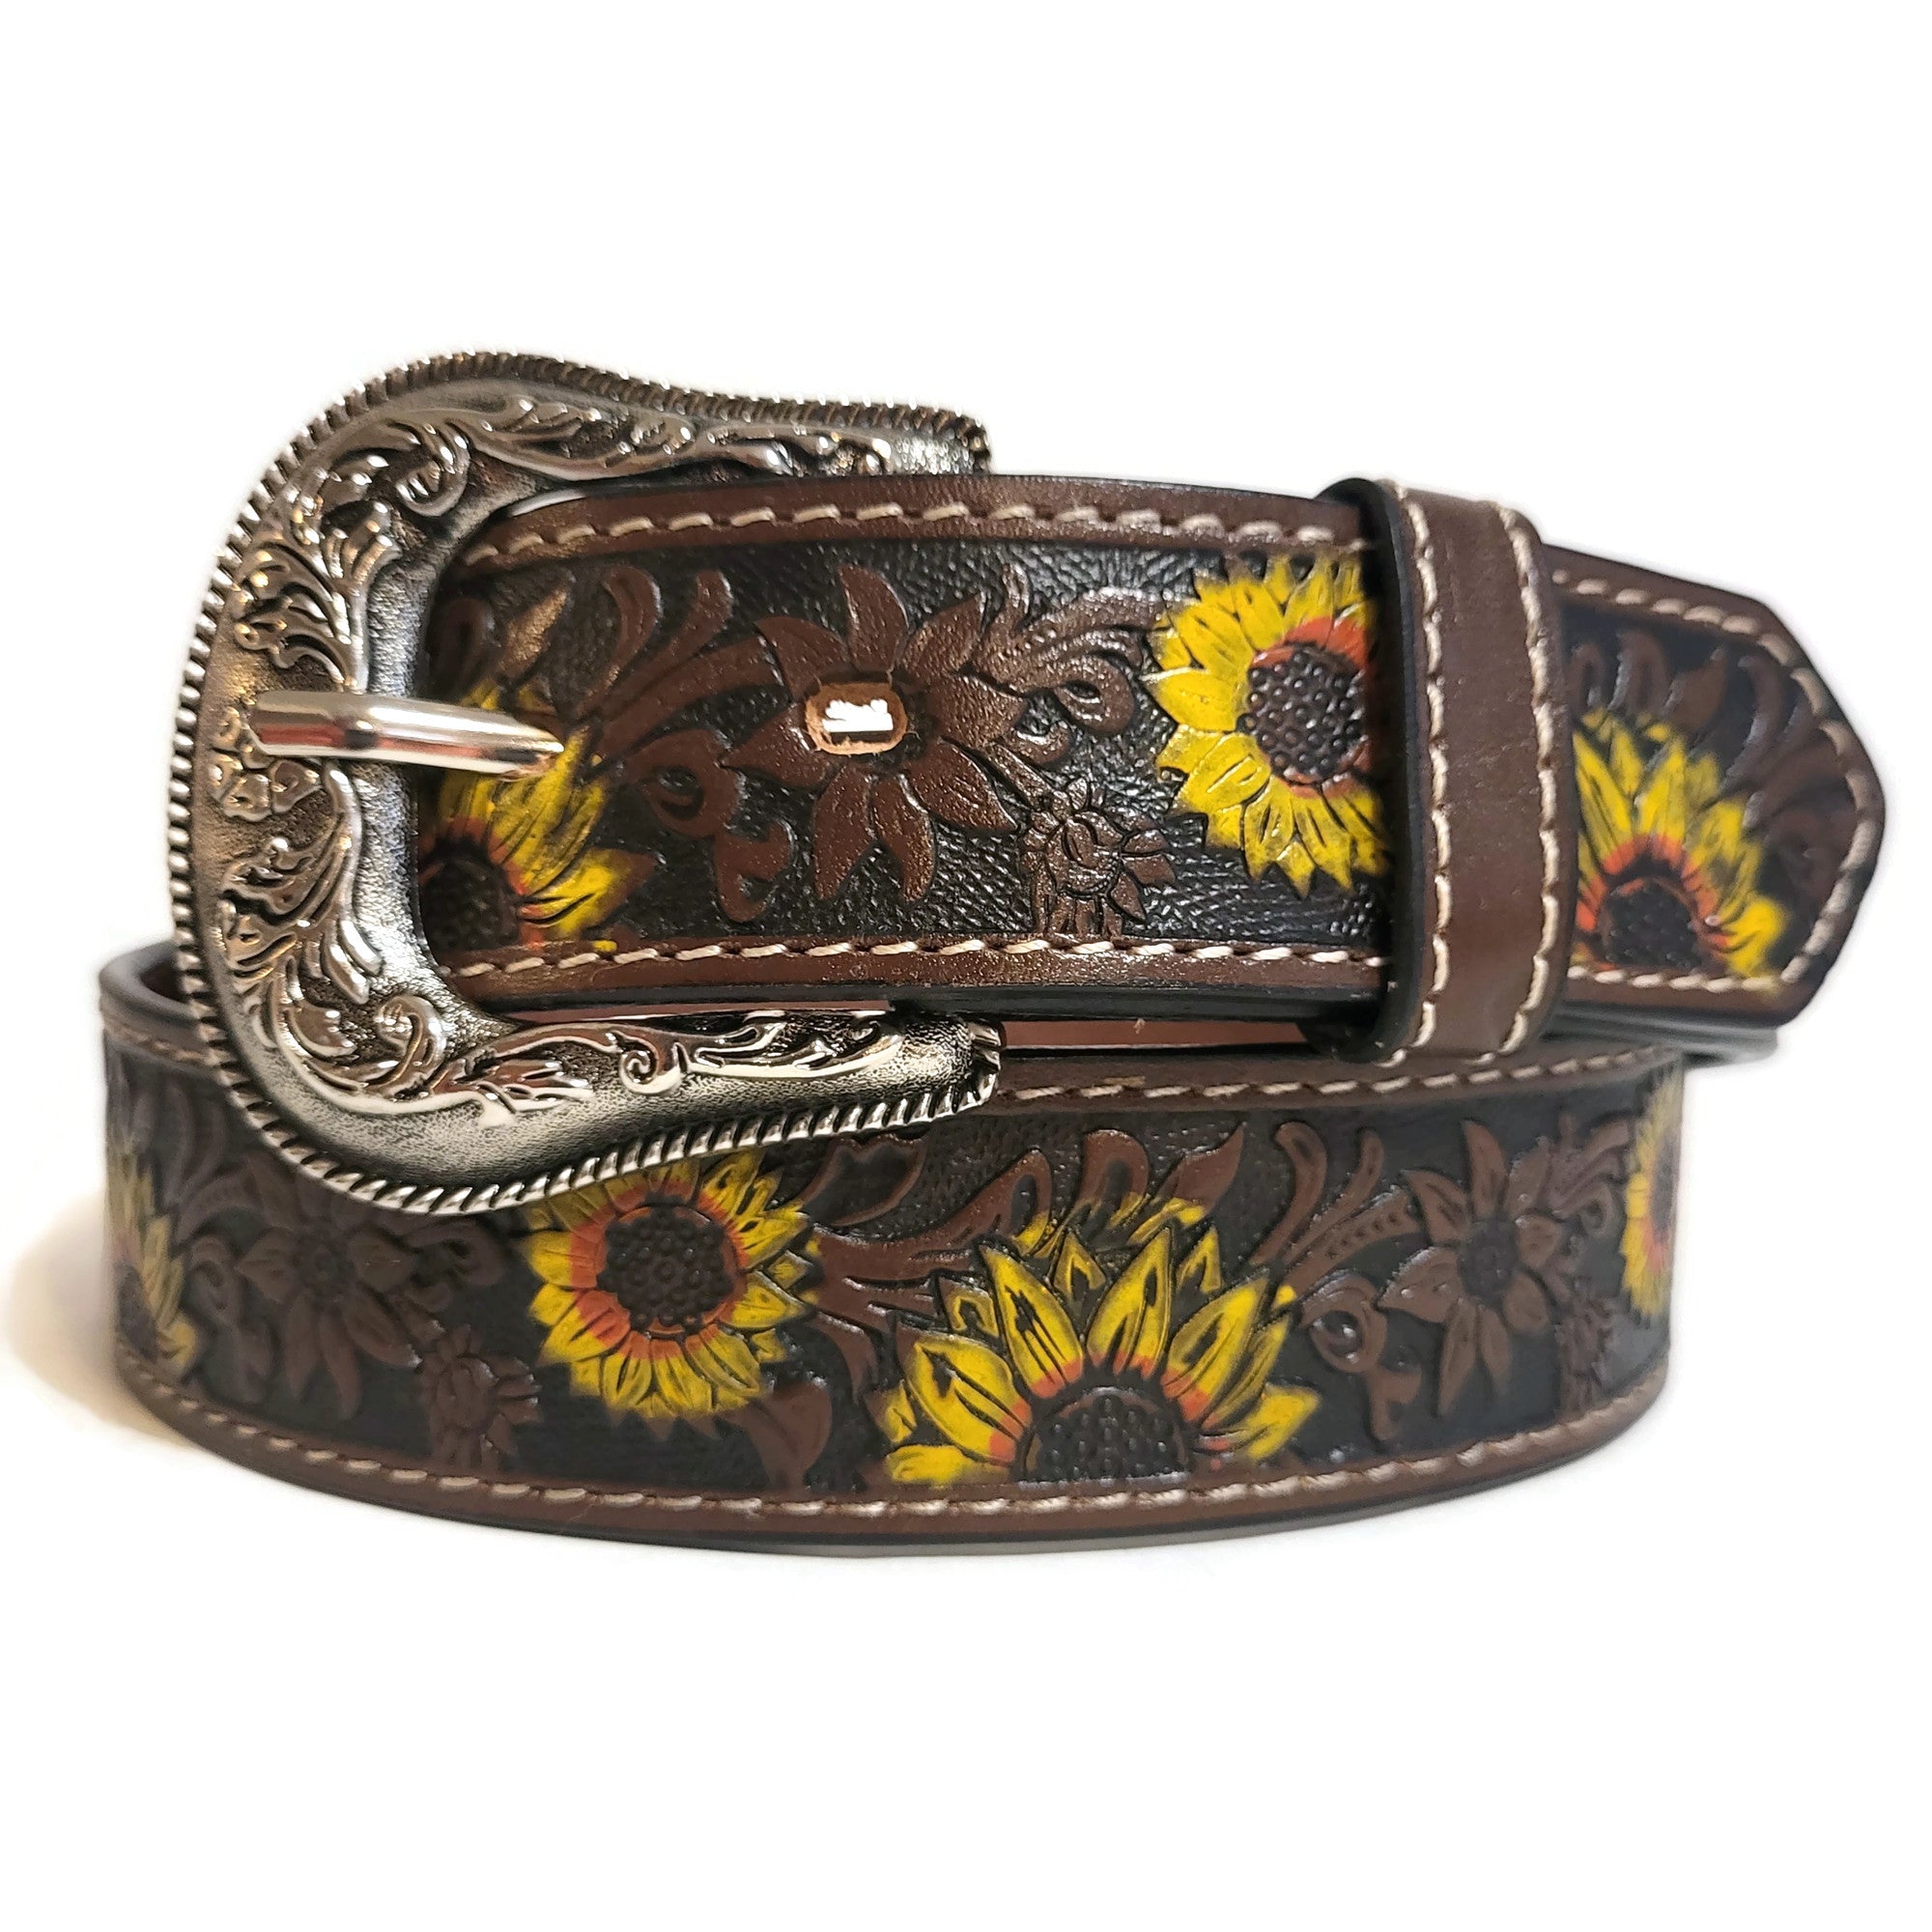 Sunflower leather belt for women